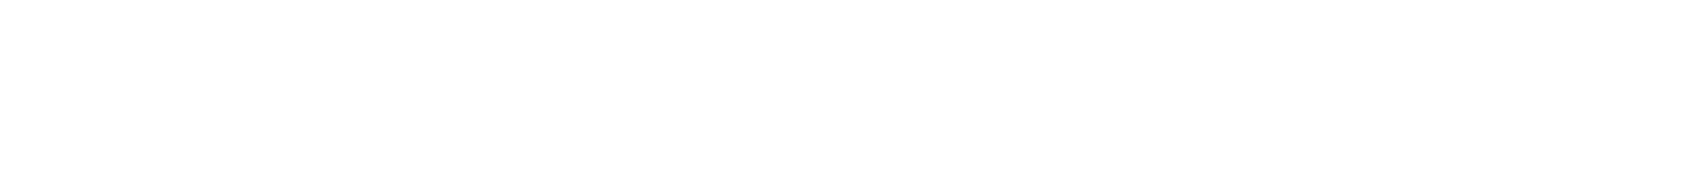 C-Series logo white